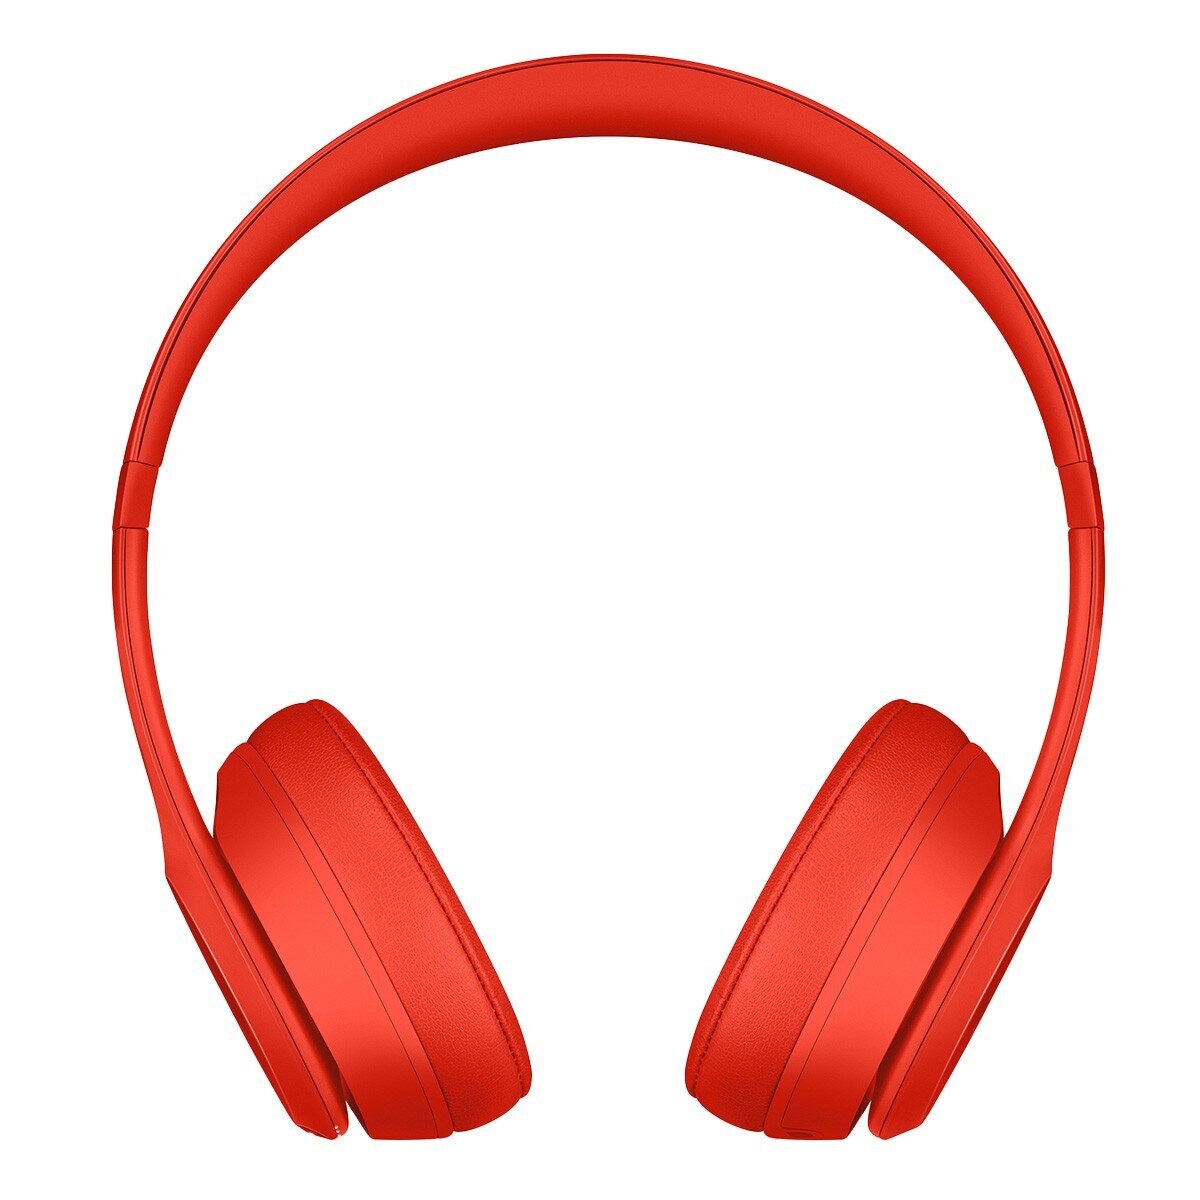 Beats Solo3 Wireless 頭戴式耳機 橘紅色